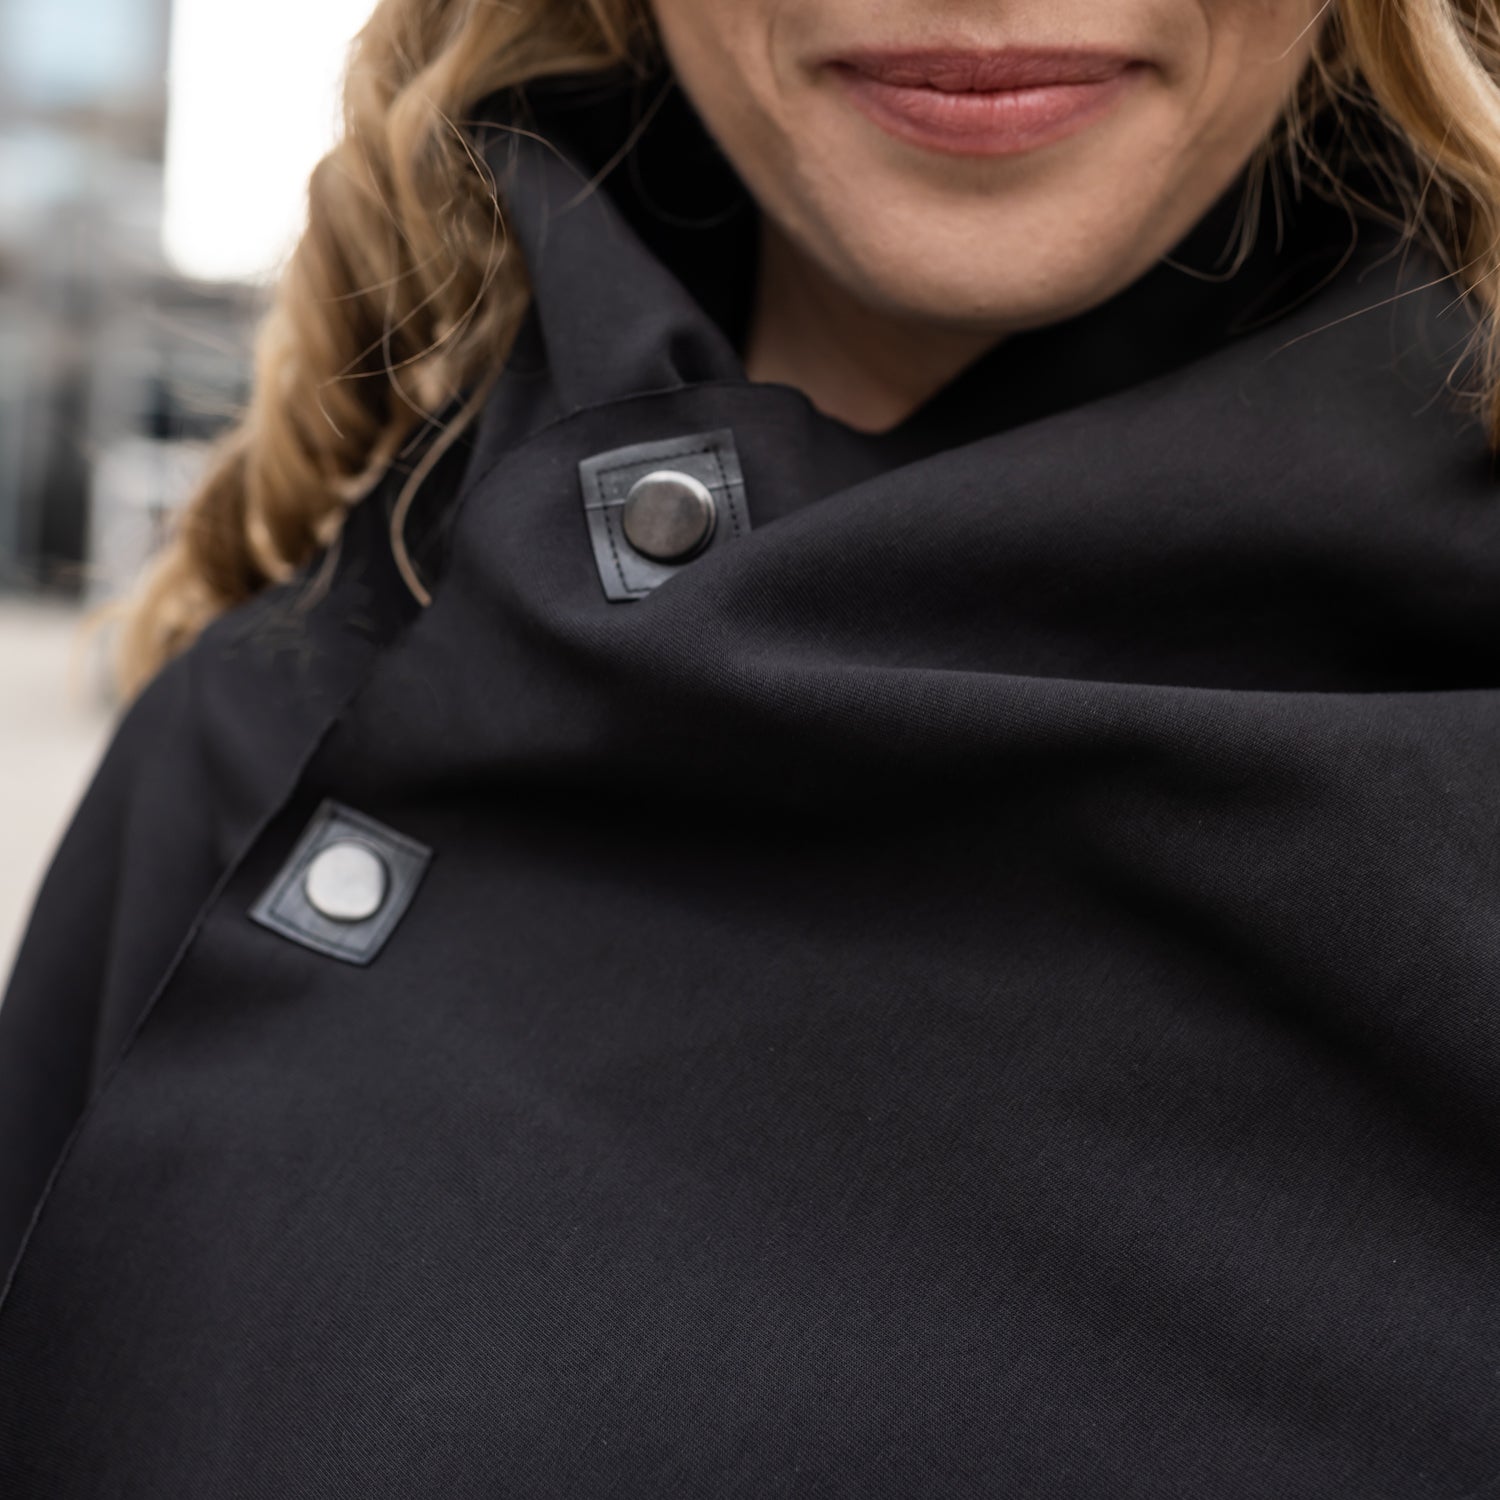 A close up of a woman wearing a black shift dress by Malaika New York